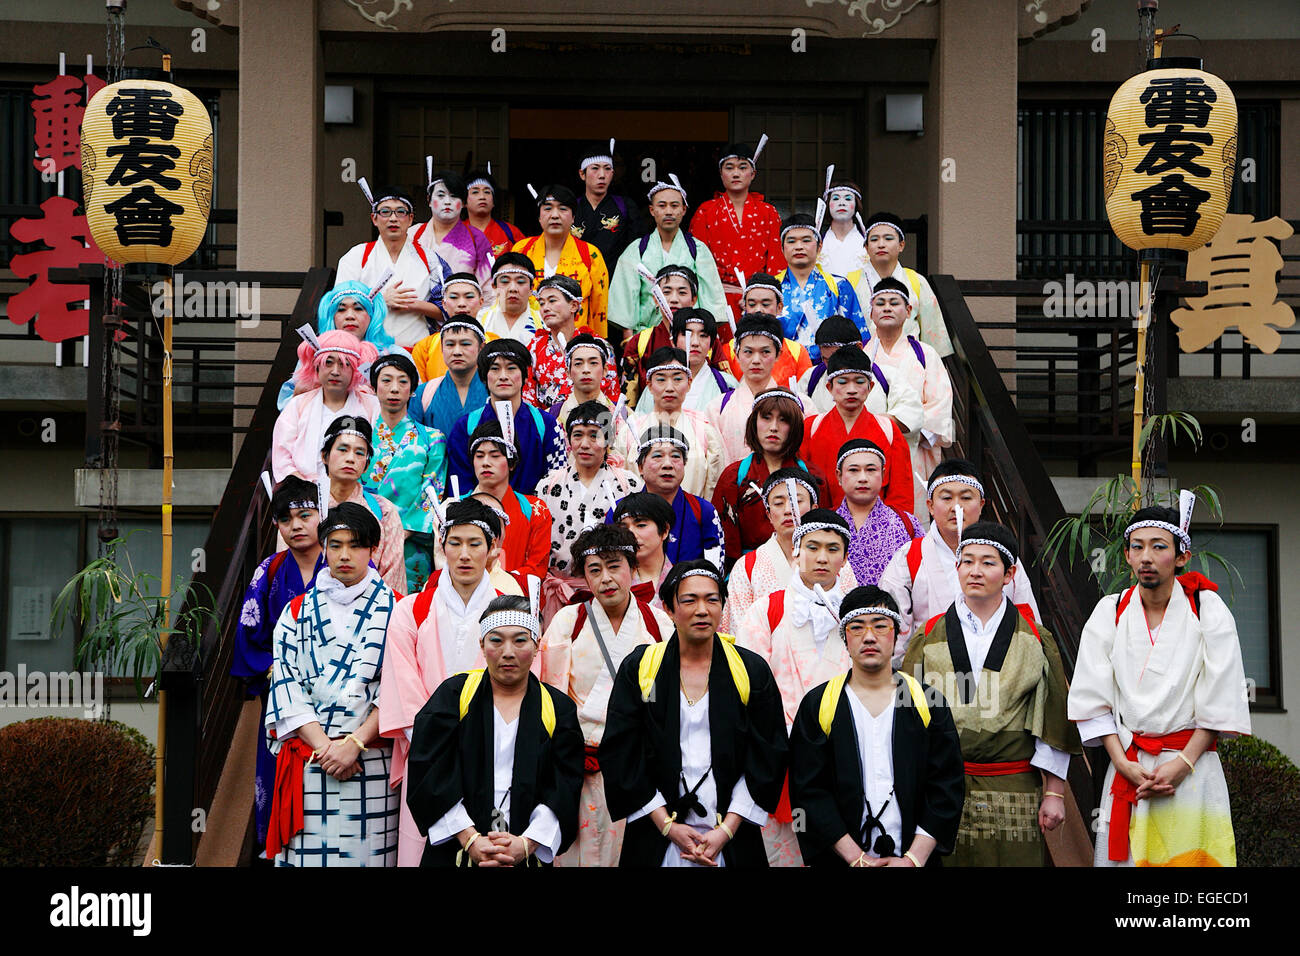 Teilnehmer in Damen Kimonos gekleidet und geschminkt besuchen die Ikazuchi kein Daihannya-Festival am 22. Februar 2015 in Tokio, Japan. Festival freiwillige tragen 6 Behälter aus dem Shinzoin-Tempel in der Nachbarschaft um böse Geister zu jagen. Das Festival Ursprünge sind unsicher; eine Legende erzählt von einem Edo-Ära Priester aus Shinzoin Tempel besuchen Haus durch Haus, böse Geister zu jagen, wenn Cholera weit verbreitet in Tokio war, und eine andere Legende einen Mann beschreibt in einer Frauen Kimono Weg böse Geister von seiner Schwester gekleidet, die an Tuberkulose erkrankt war. (Foto von Rodrigo Reyes Stockfoto